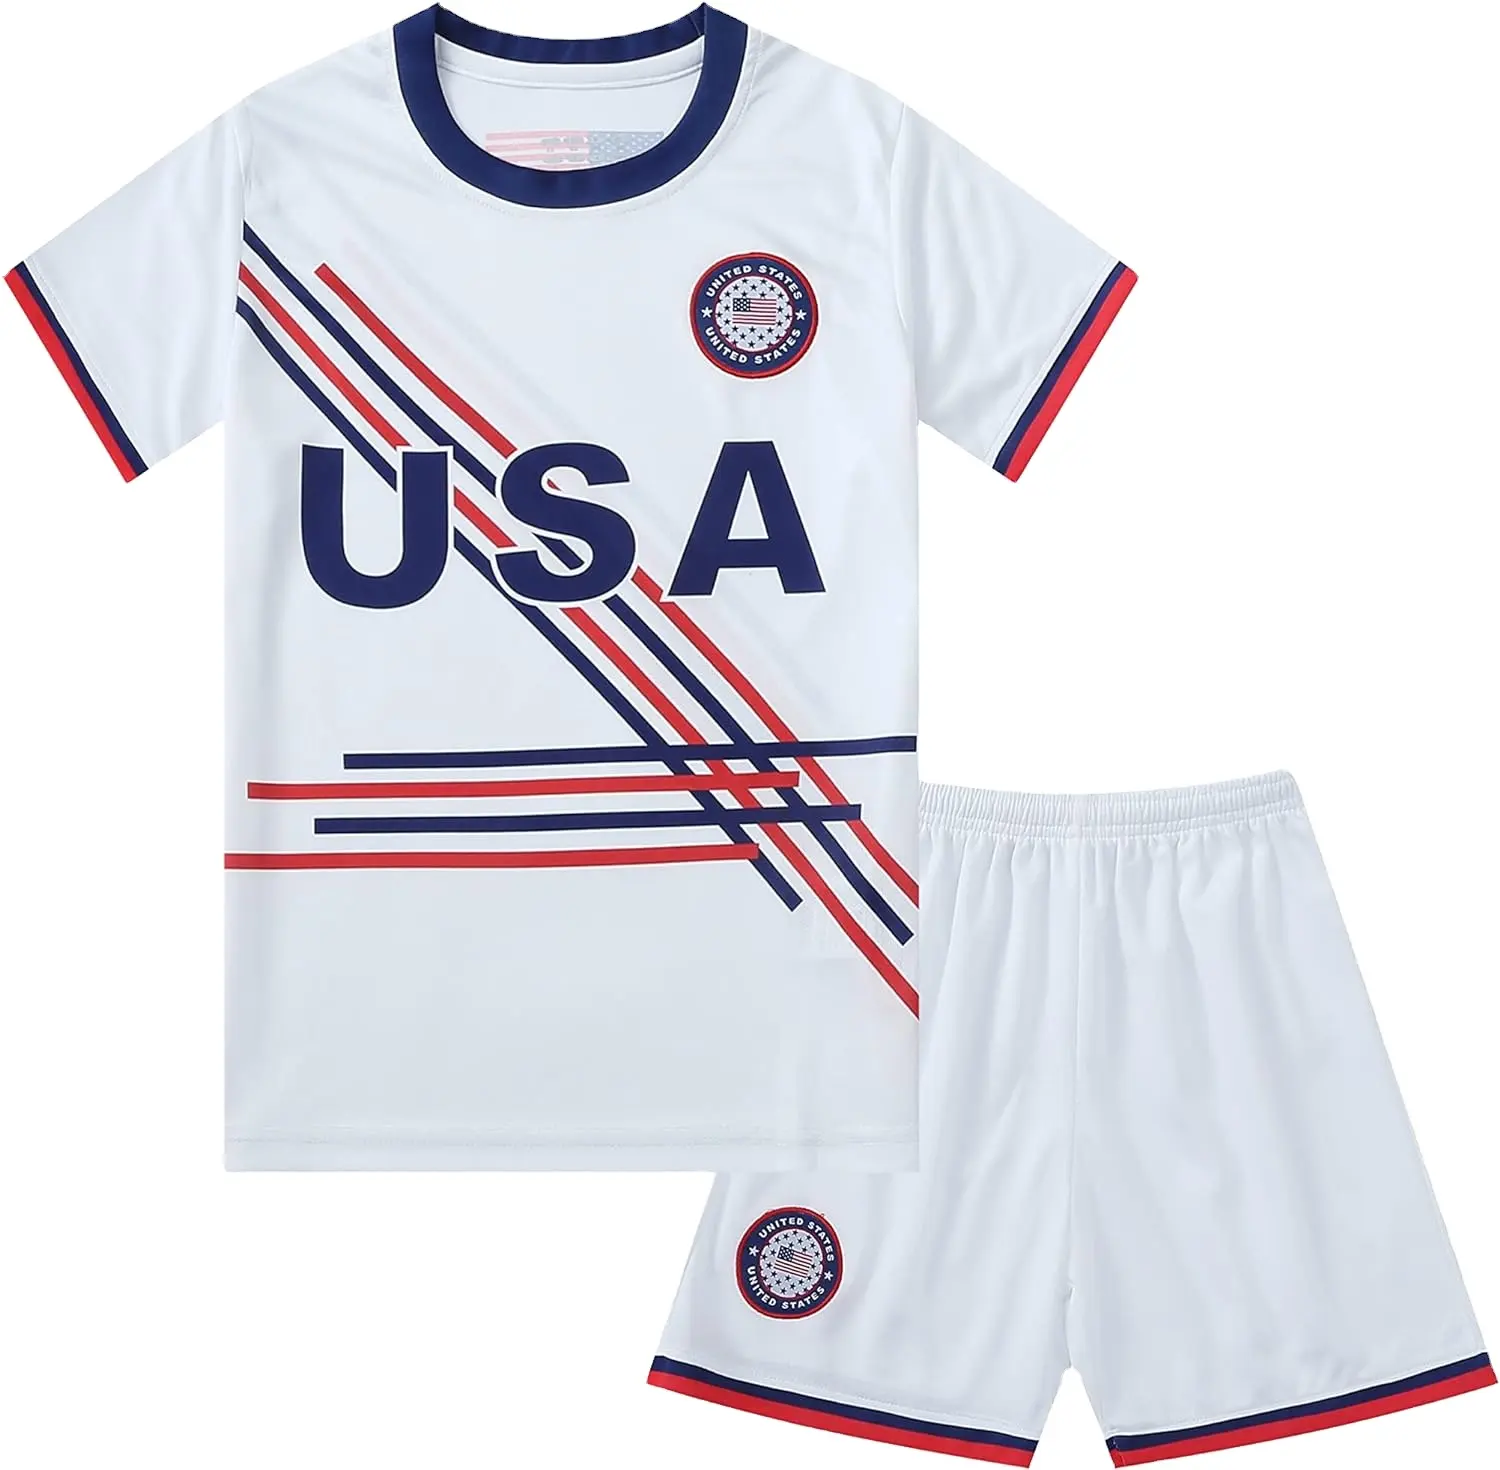 Kunden spezifisches Team USA USA Weltmeister Sport Basketball Fußball Jungen Kinder Jugend Trikot Shirt Kit Set